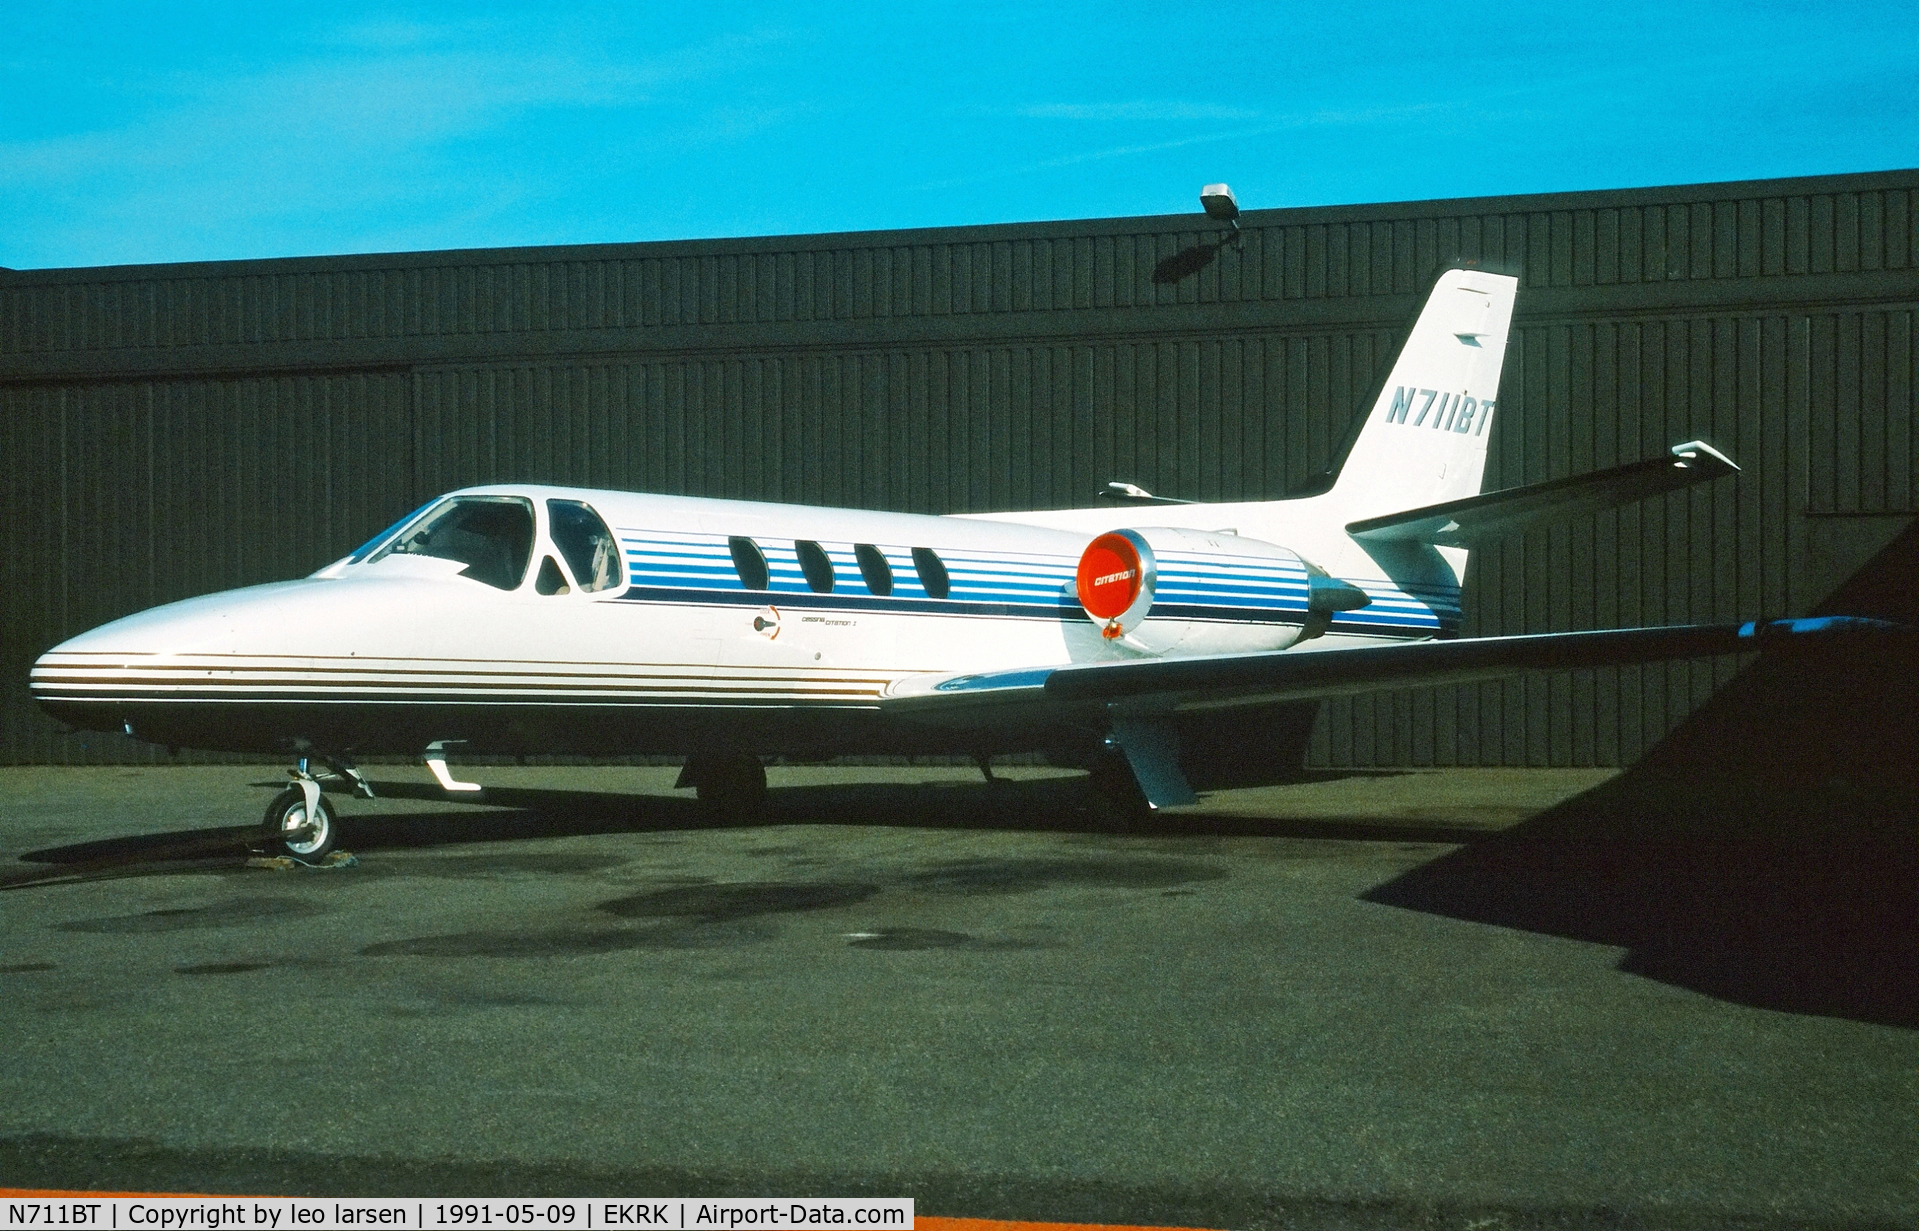 N711BT, 1982 Cessna 501 Citation I/SP C/N 501-0240, Roskilde 9.5.1991